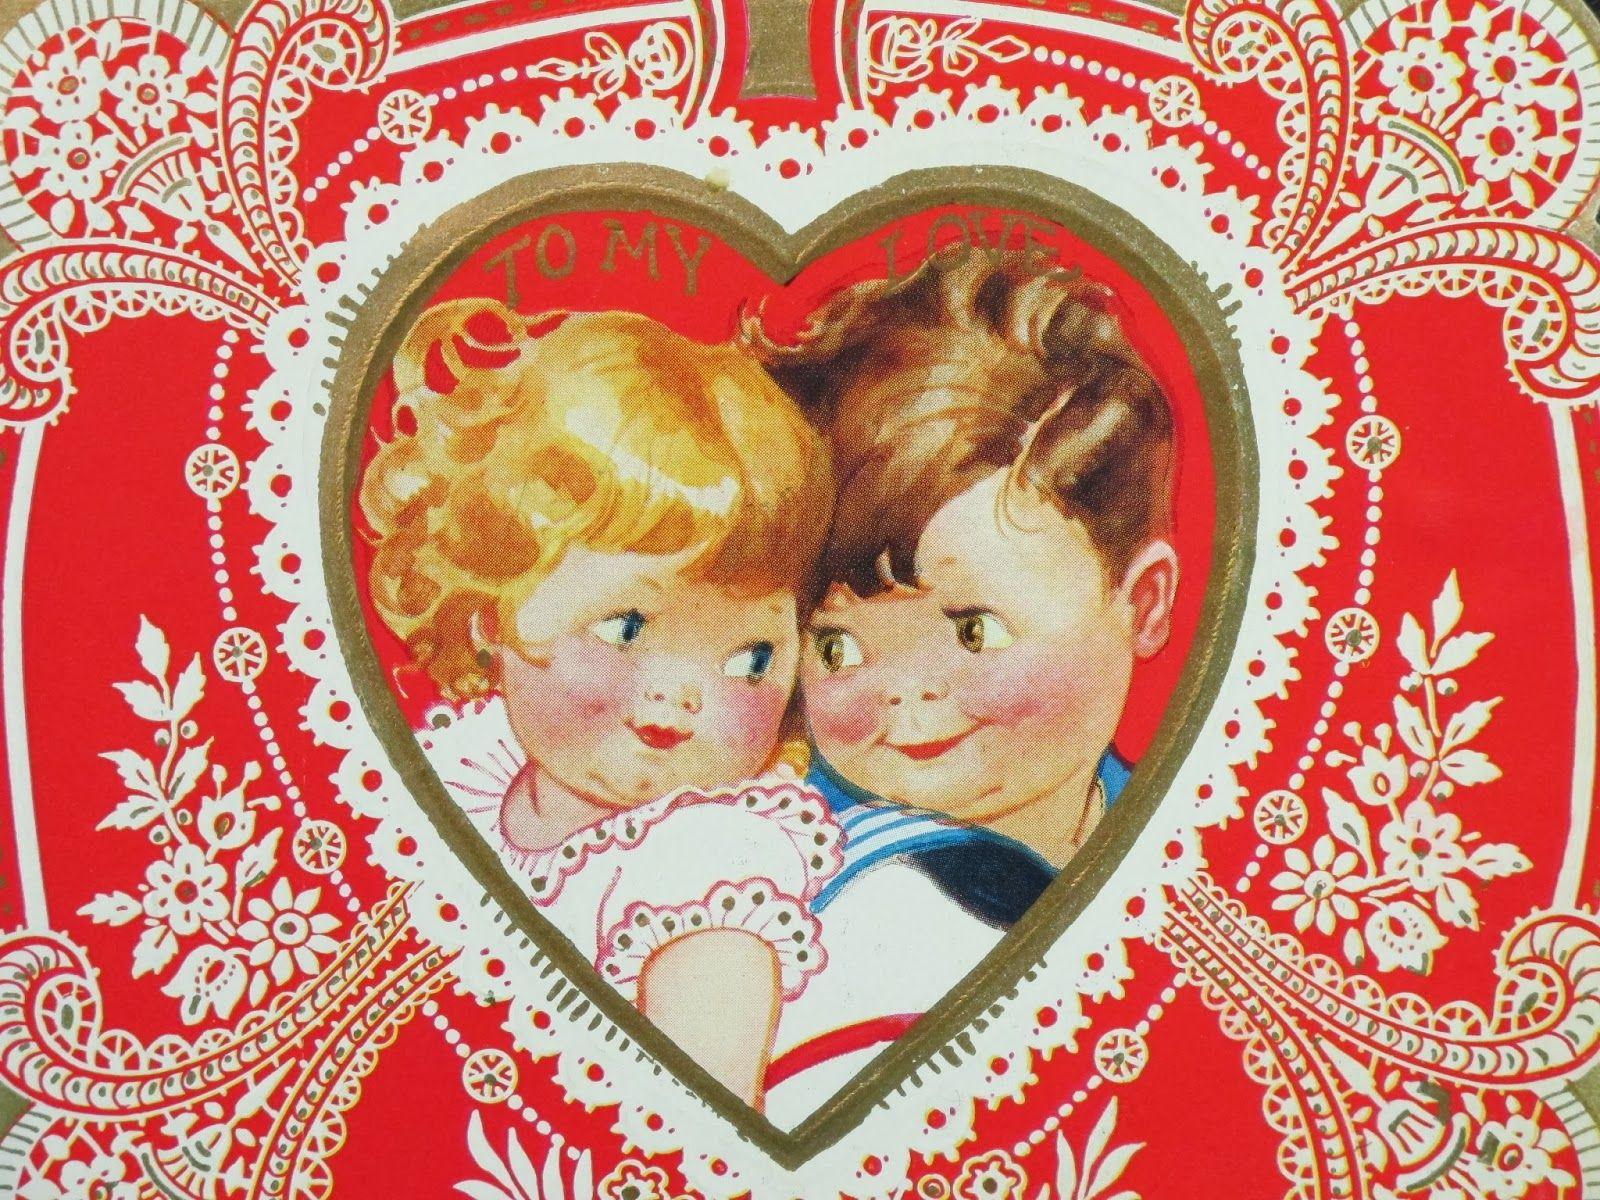 vintage valentines background